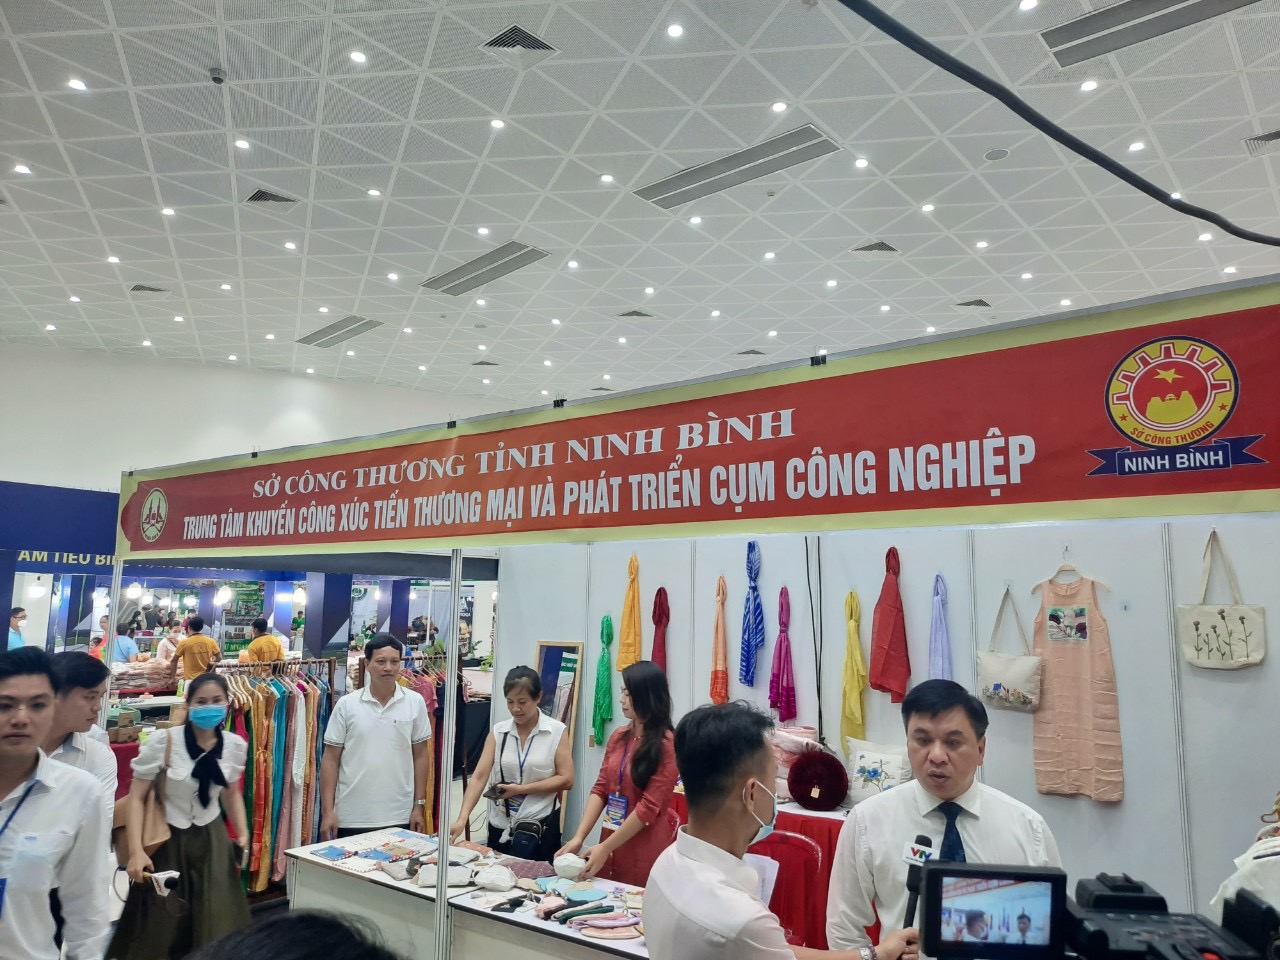 Trung tâm khuyến công Xúc tiến thương mại và phát triển cụm công nghiệp Ninh Bình tham gia Hội chợ Quốc tế Thương mại, Du lịch và Đầu tư Hành lang kinh tế Đông Tây - Đà Nẵng 2022